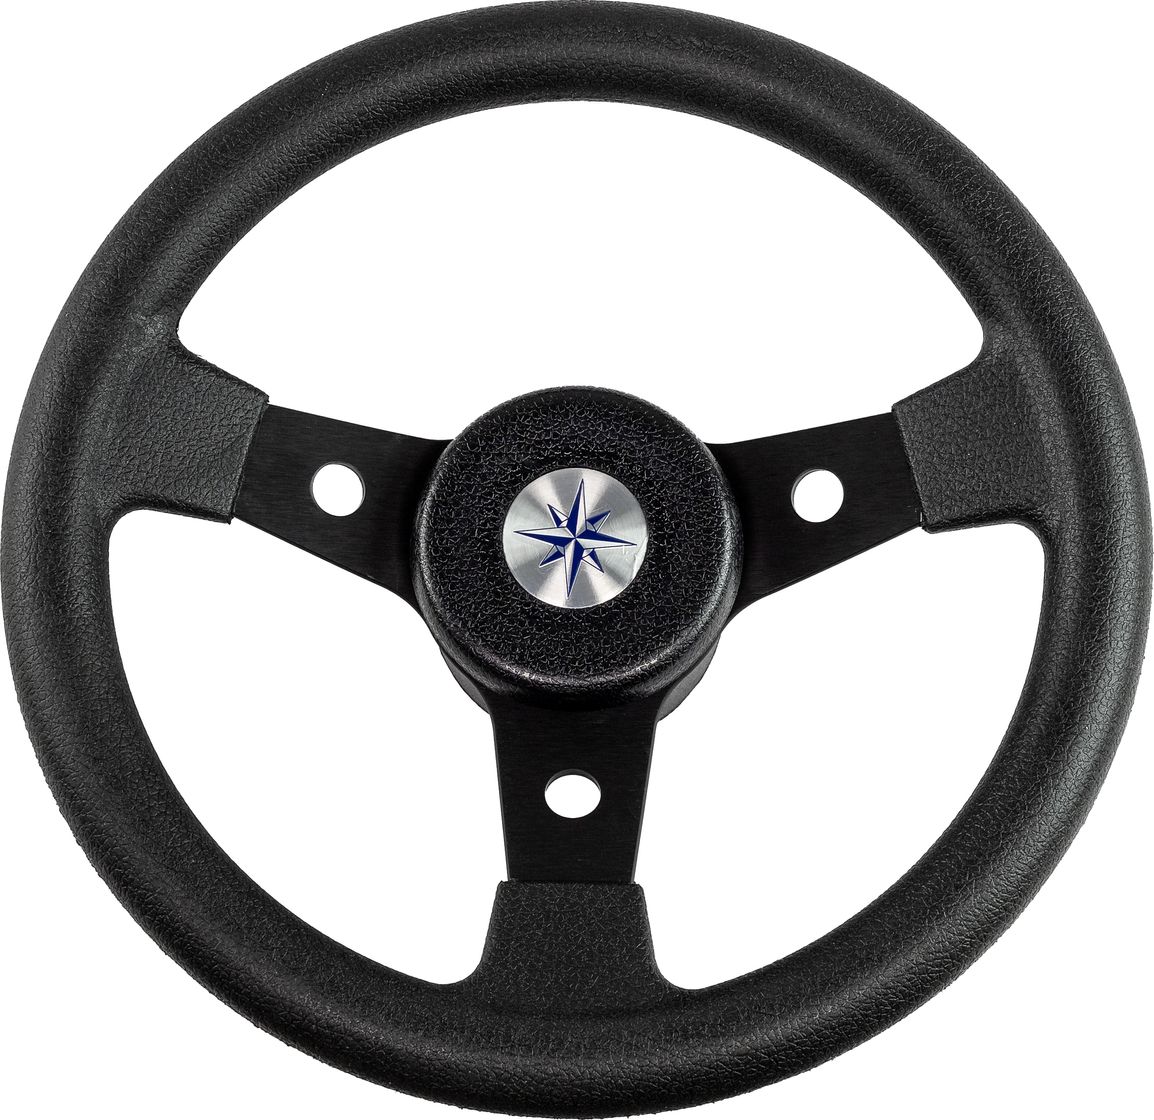 Рулевое колесо DELFINO обод и спицы черные д. 310 мм VN70104-01 рулевое колесо delfino обод спицы серебряные д 340 мм vn70401 01